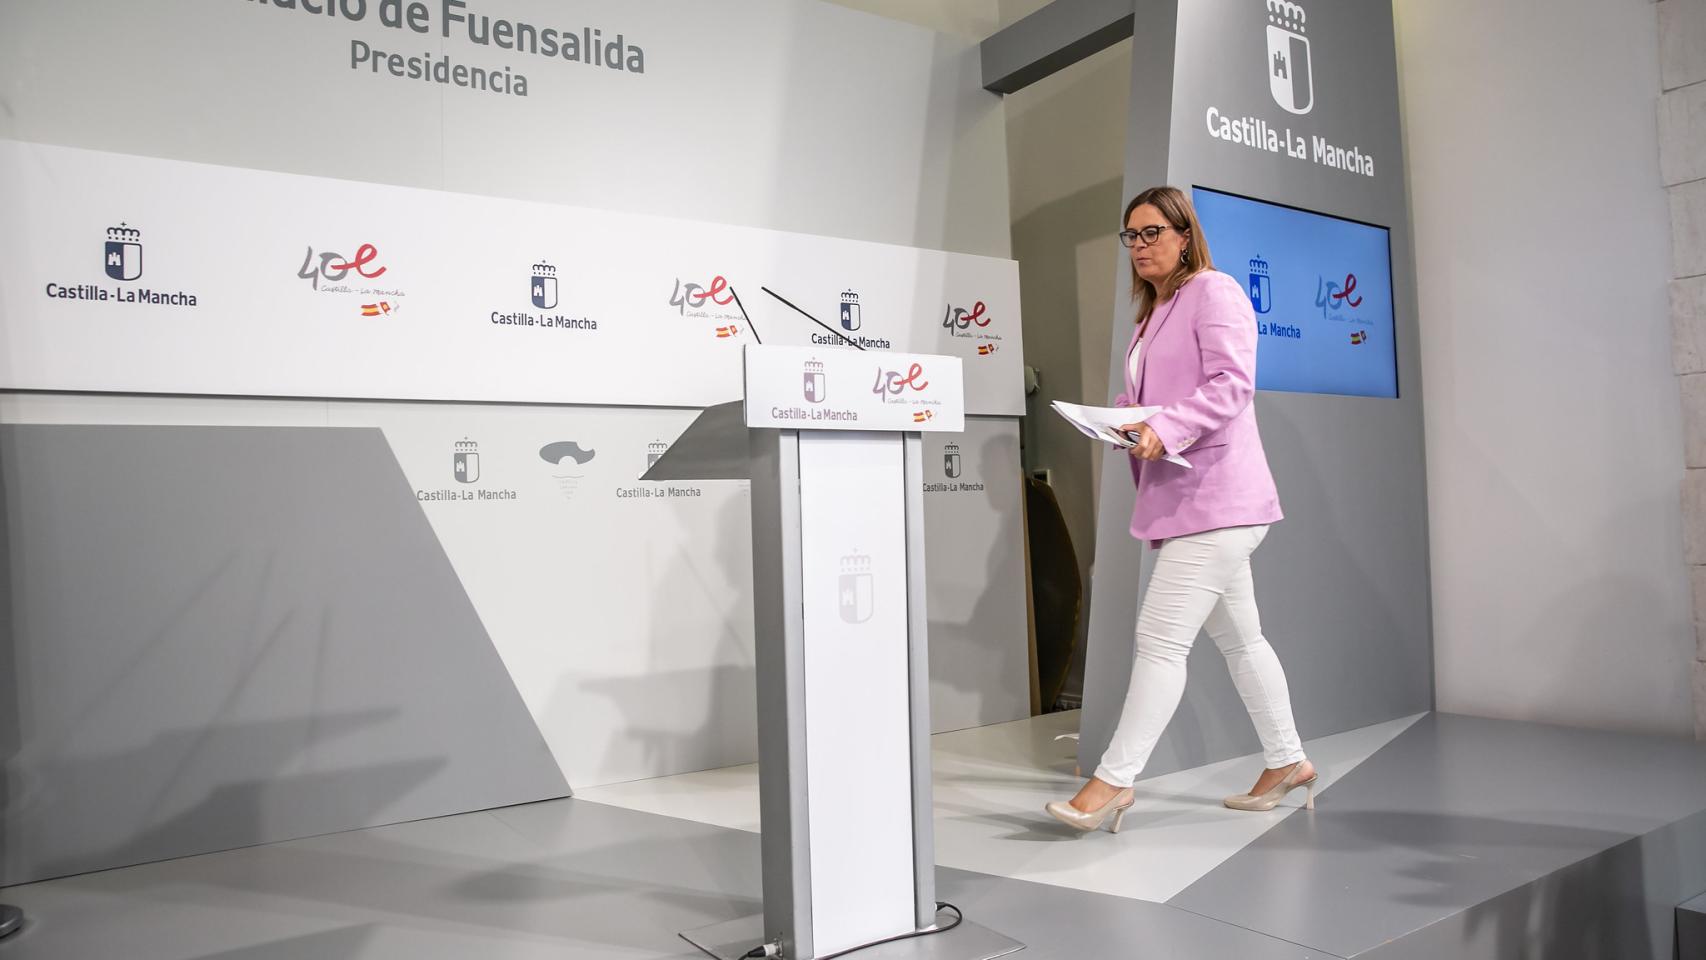 Esther Padilla, consejera portavoz del Gobierno de Castilla-La Mancha, este miércoles en rueda de prensa